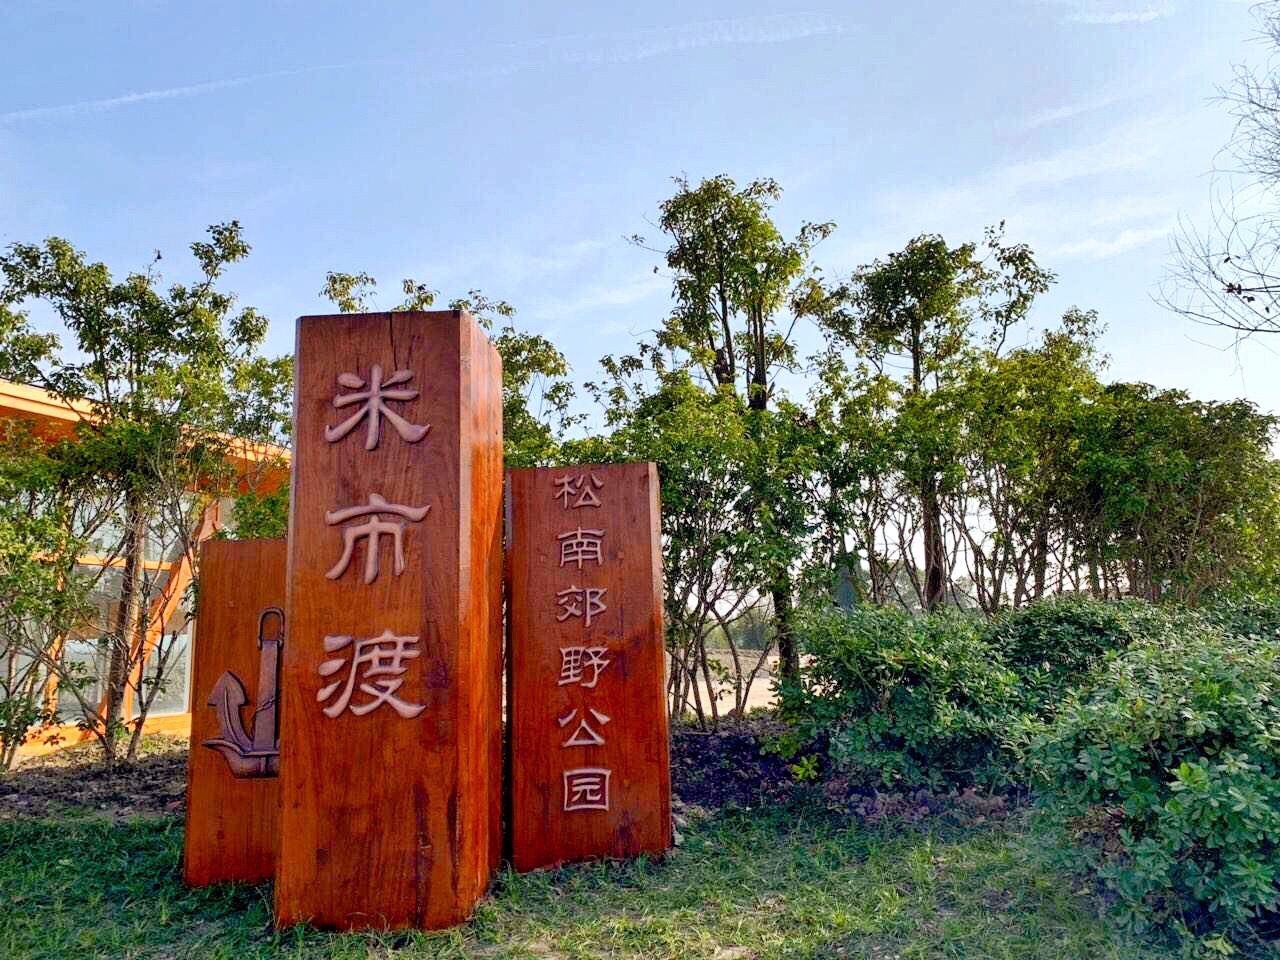 【携程攻略】上海松南郊野公园景点,一场说走就走的旅行.